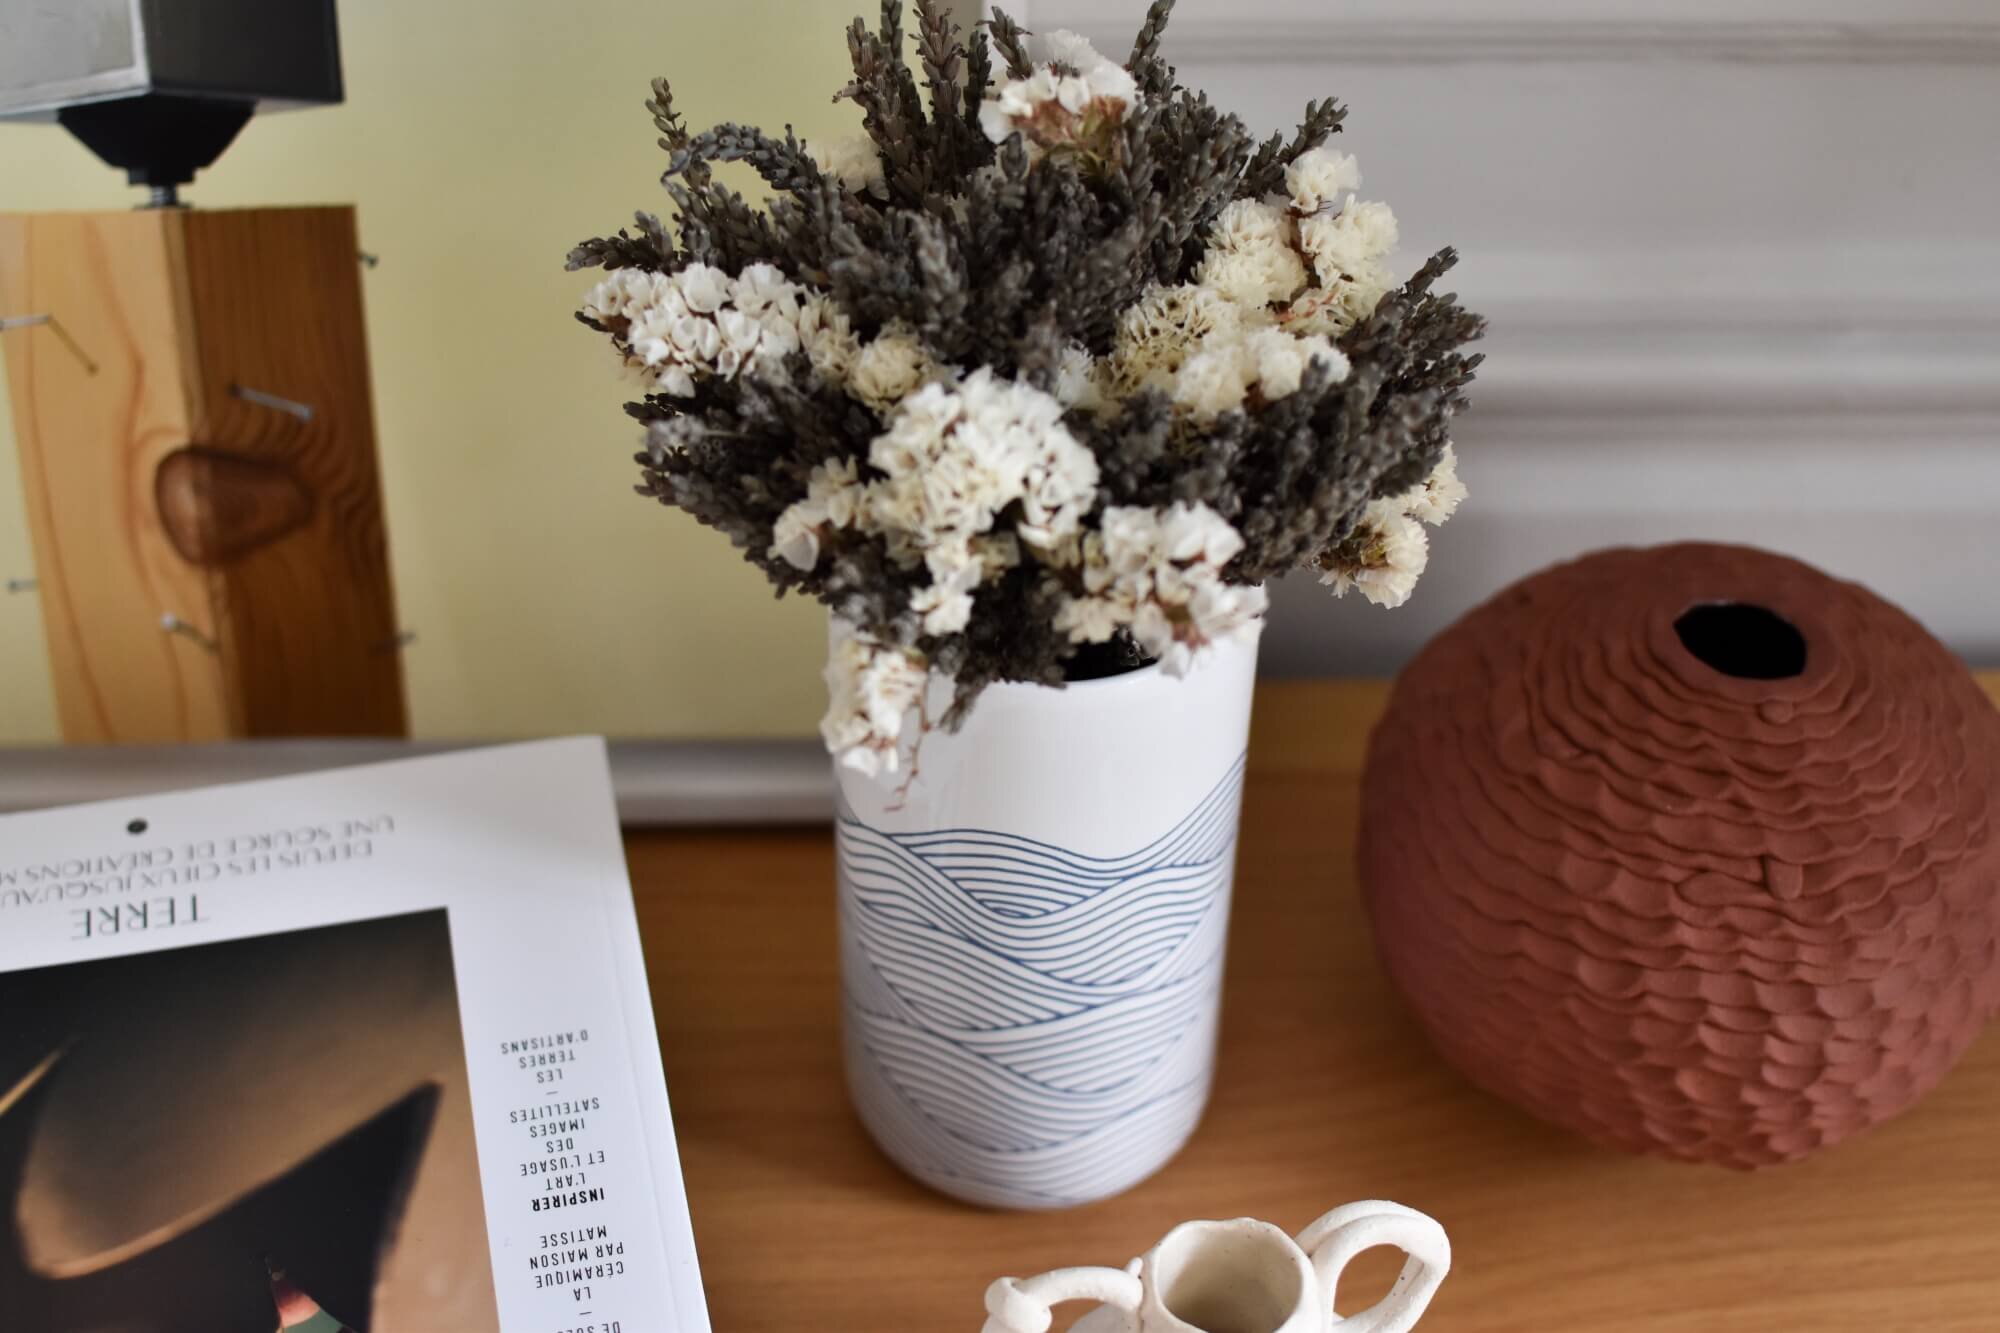 Petit vase blanc avec le décor ondé bleu Faiencerie Georges x Atelier Particulier